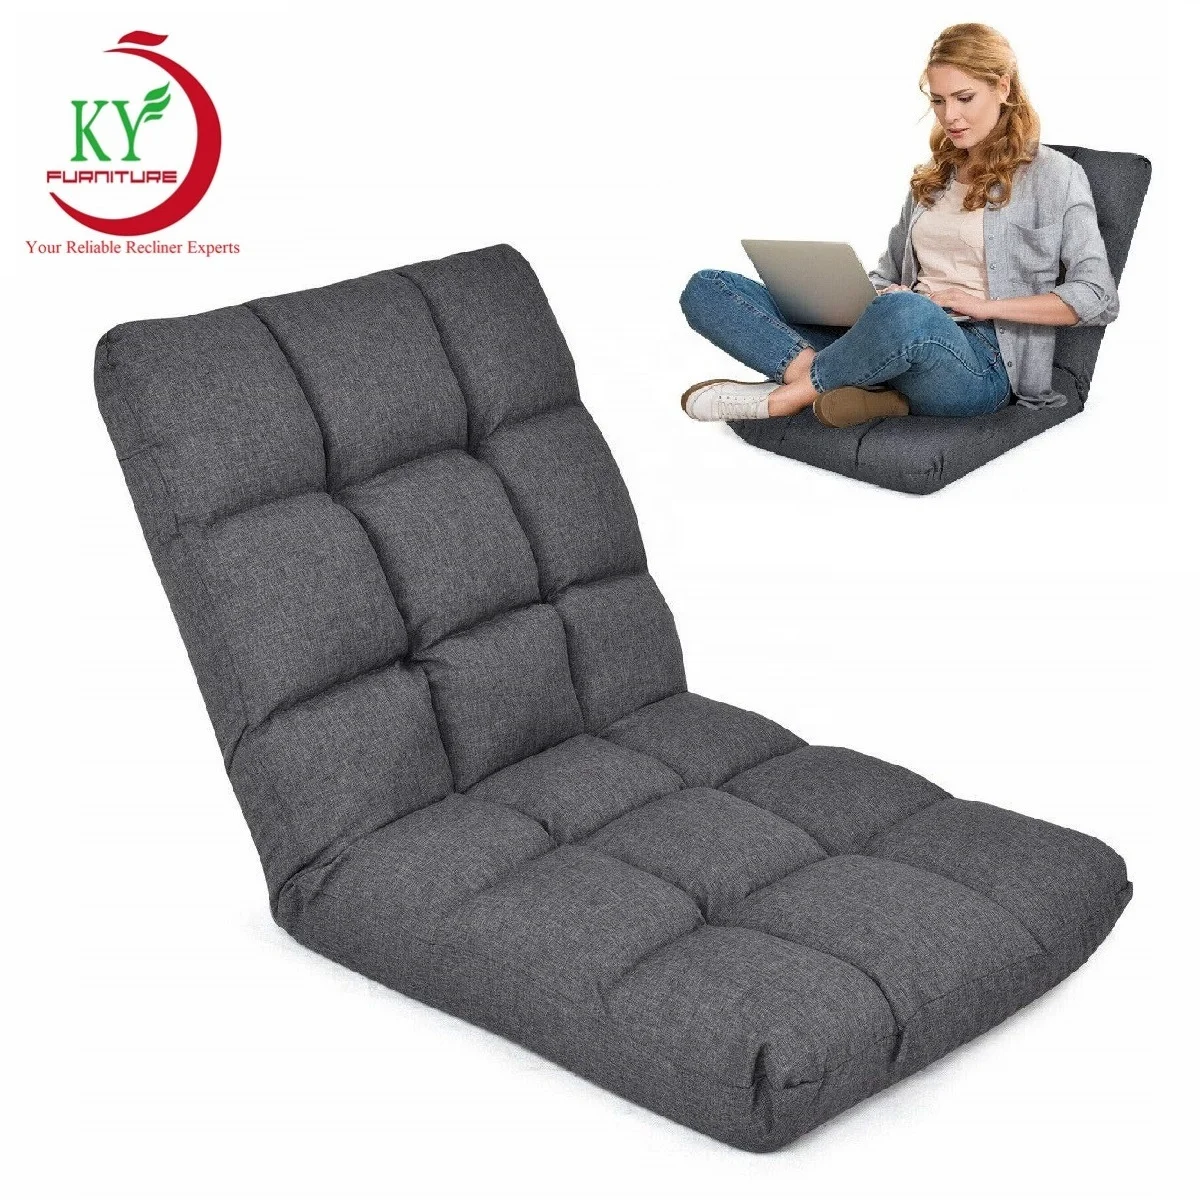 
Мебель JKY, кресло для отдыха, регулируемое кресло для сна, складное кресло для пола 